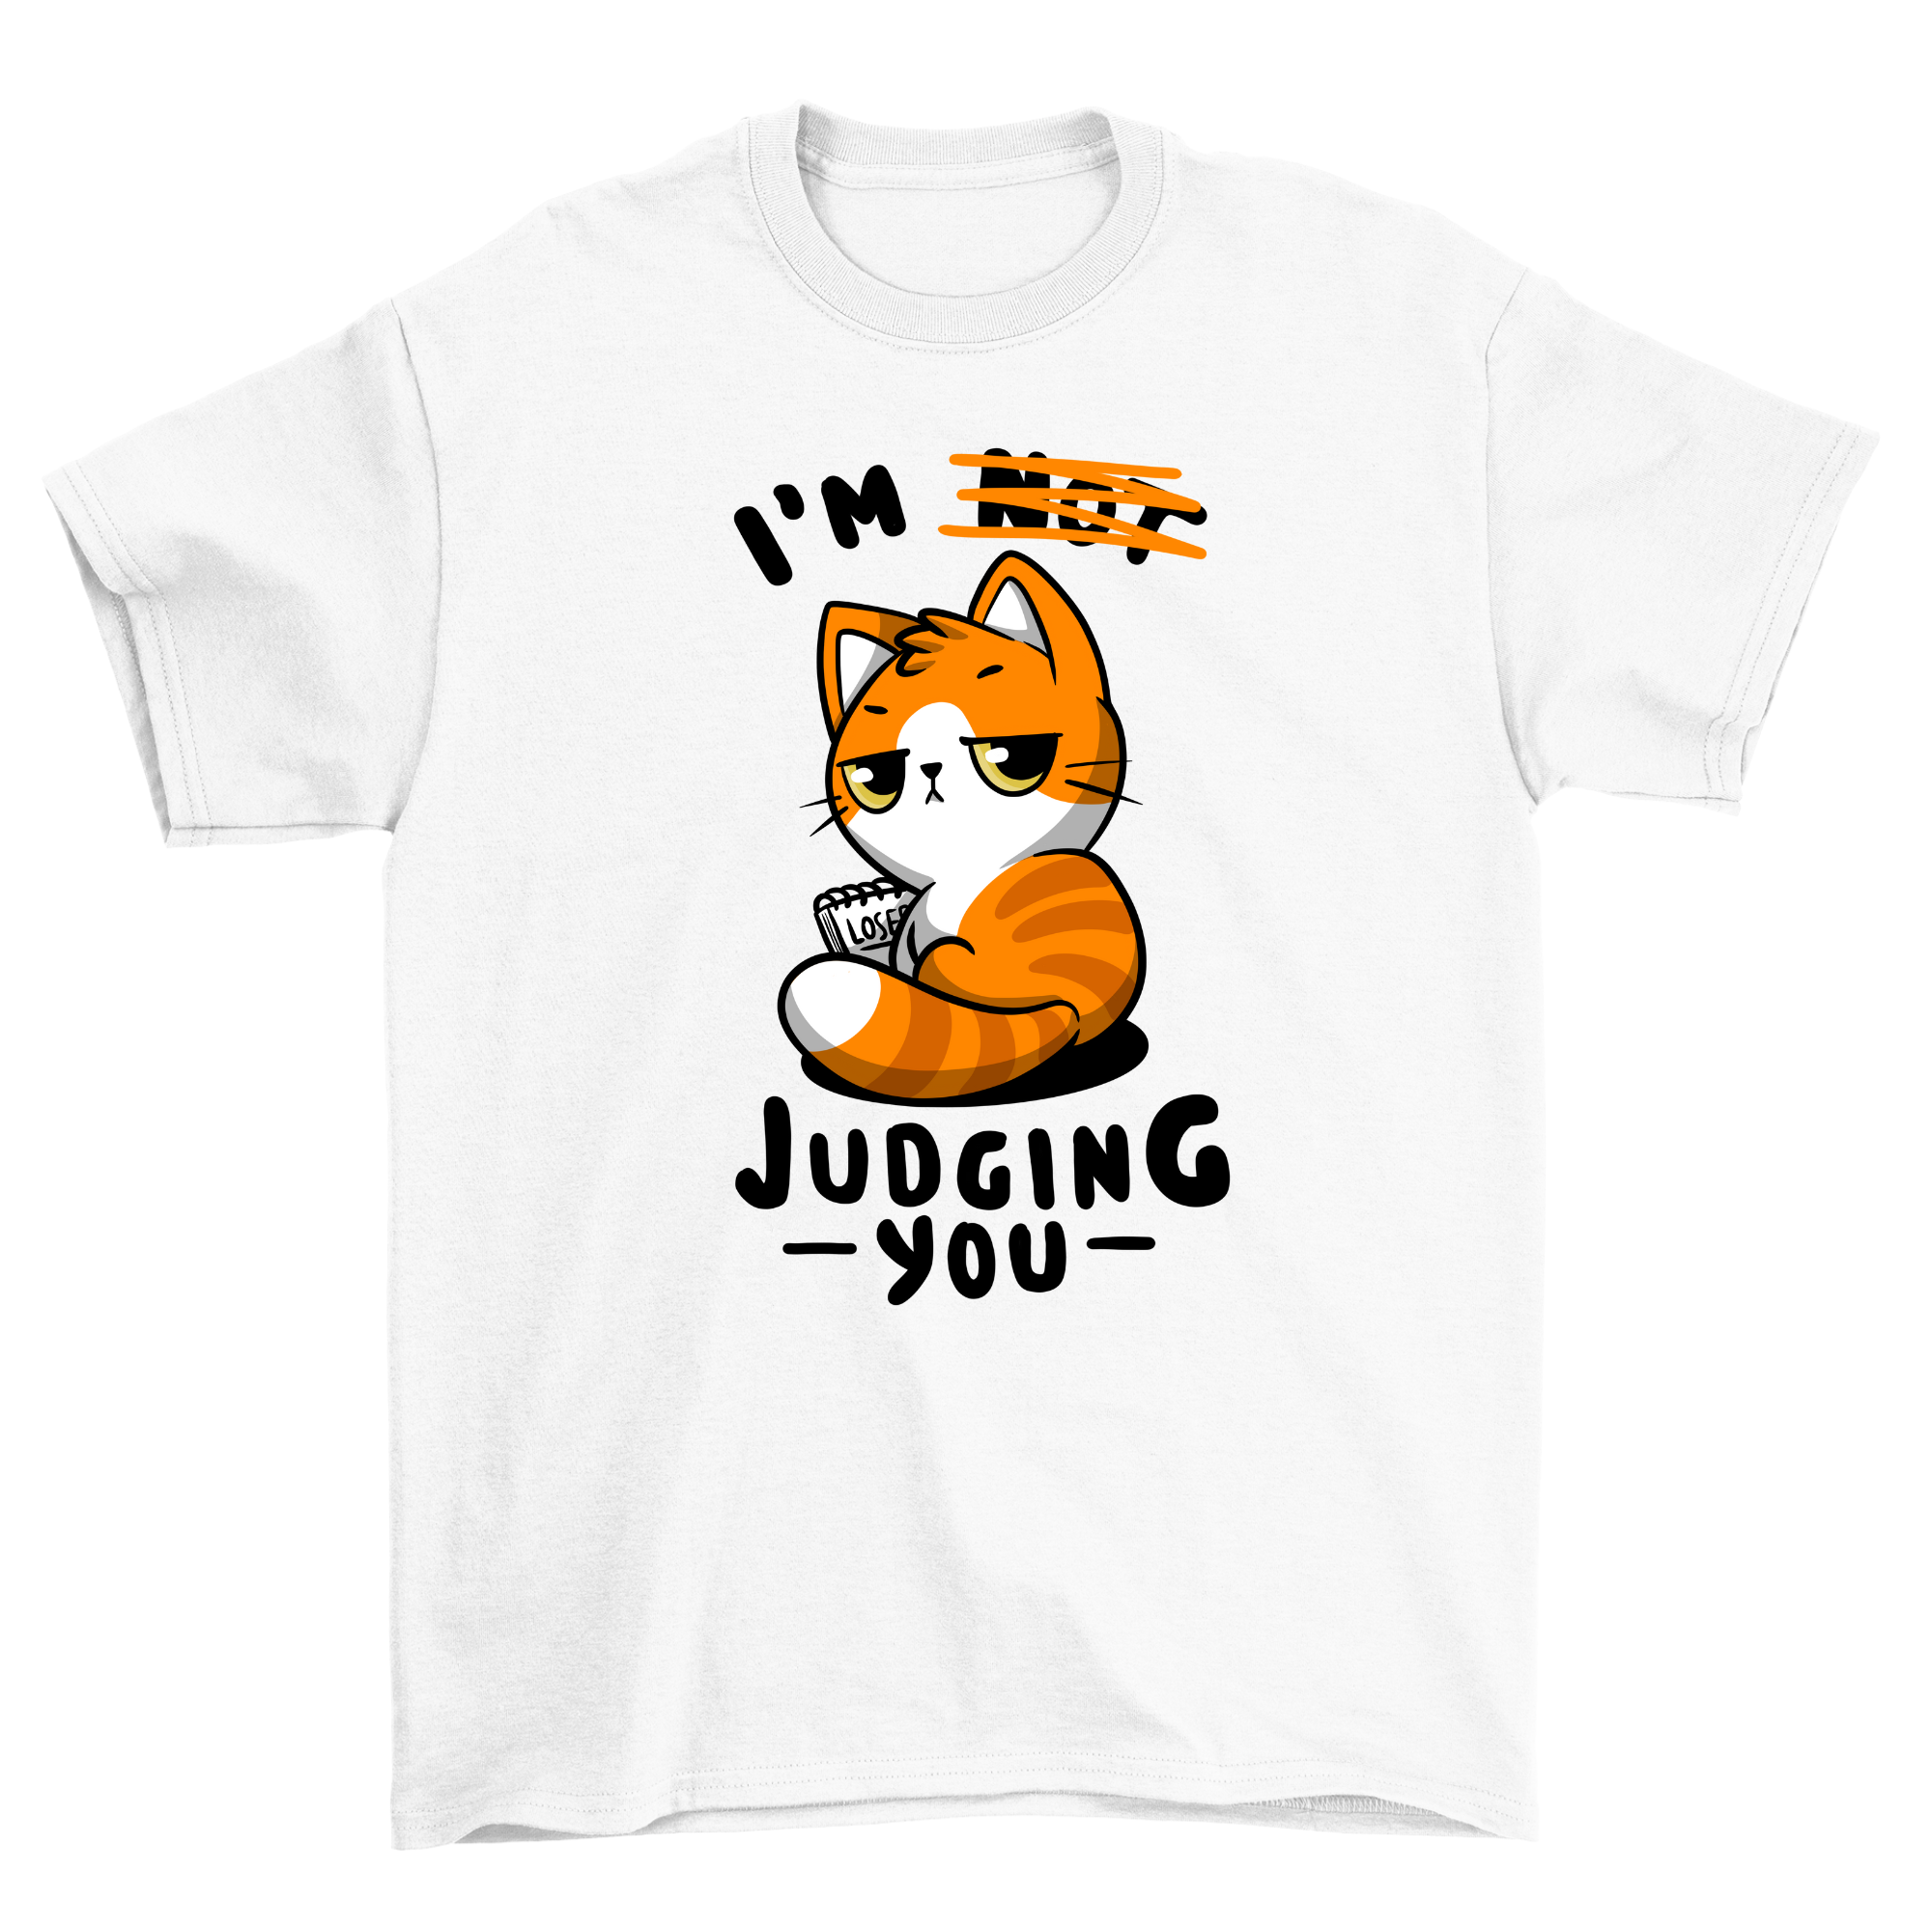 judging you - Shirt Unisex